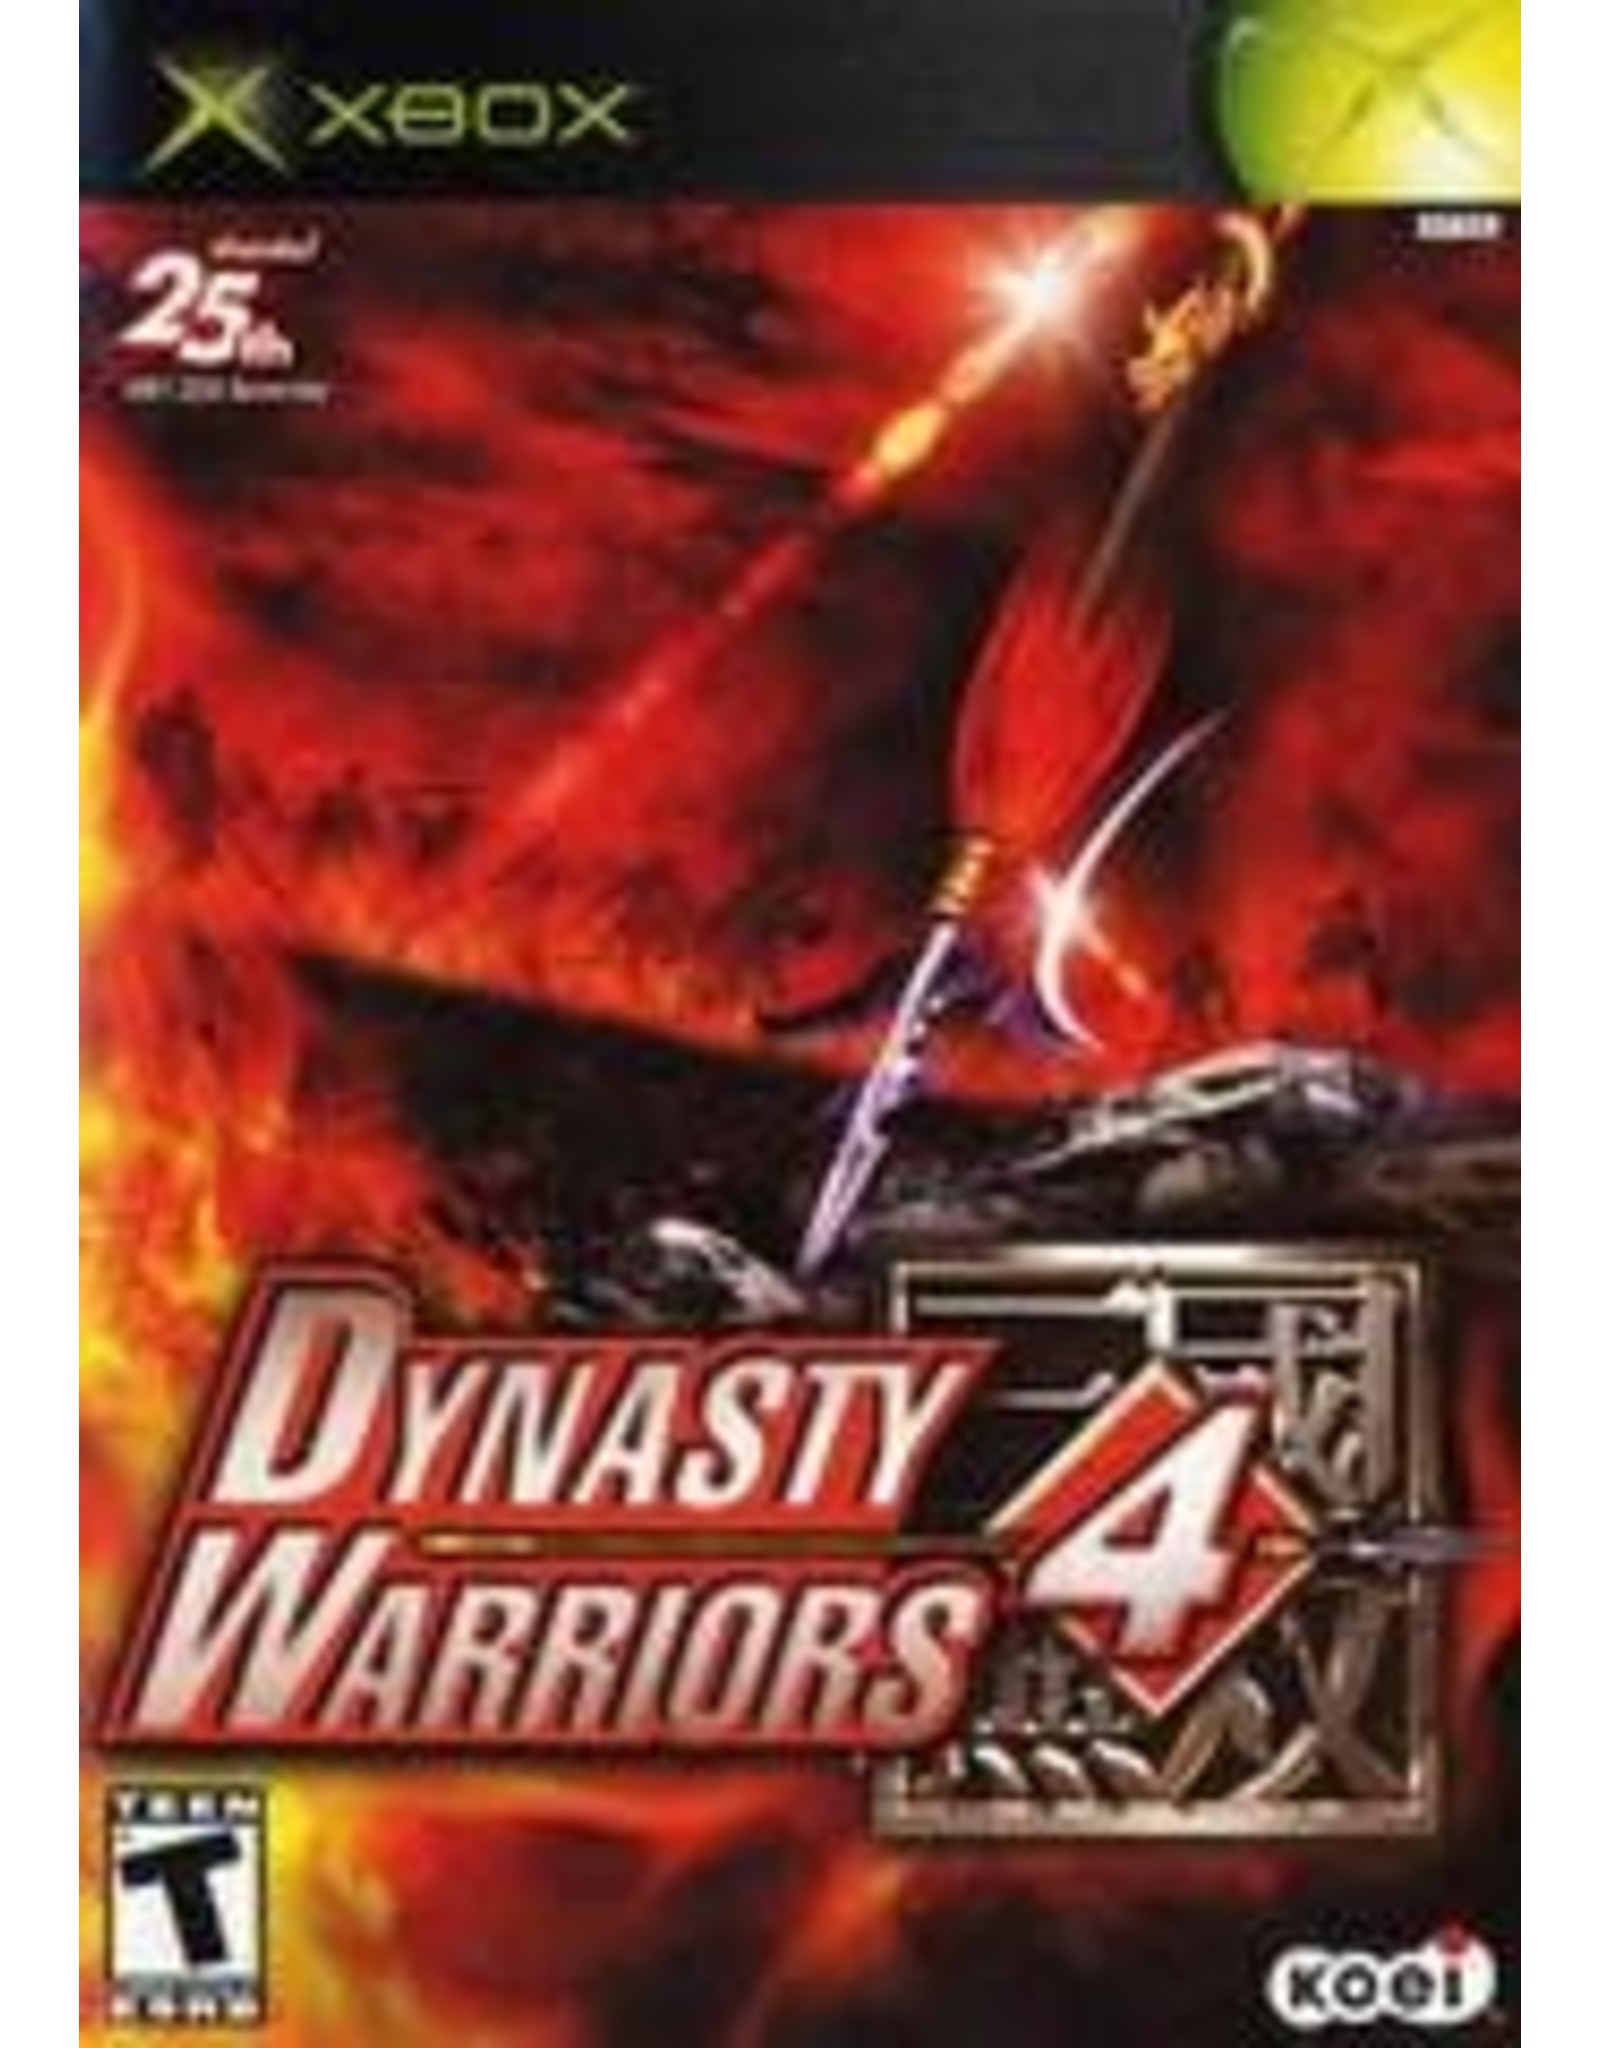 Xbox Dynasty Warriors 4 (CiB)